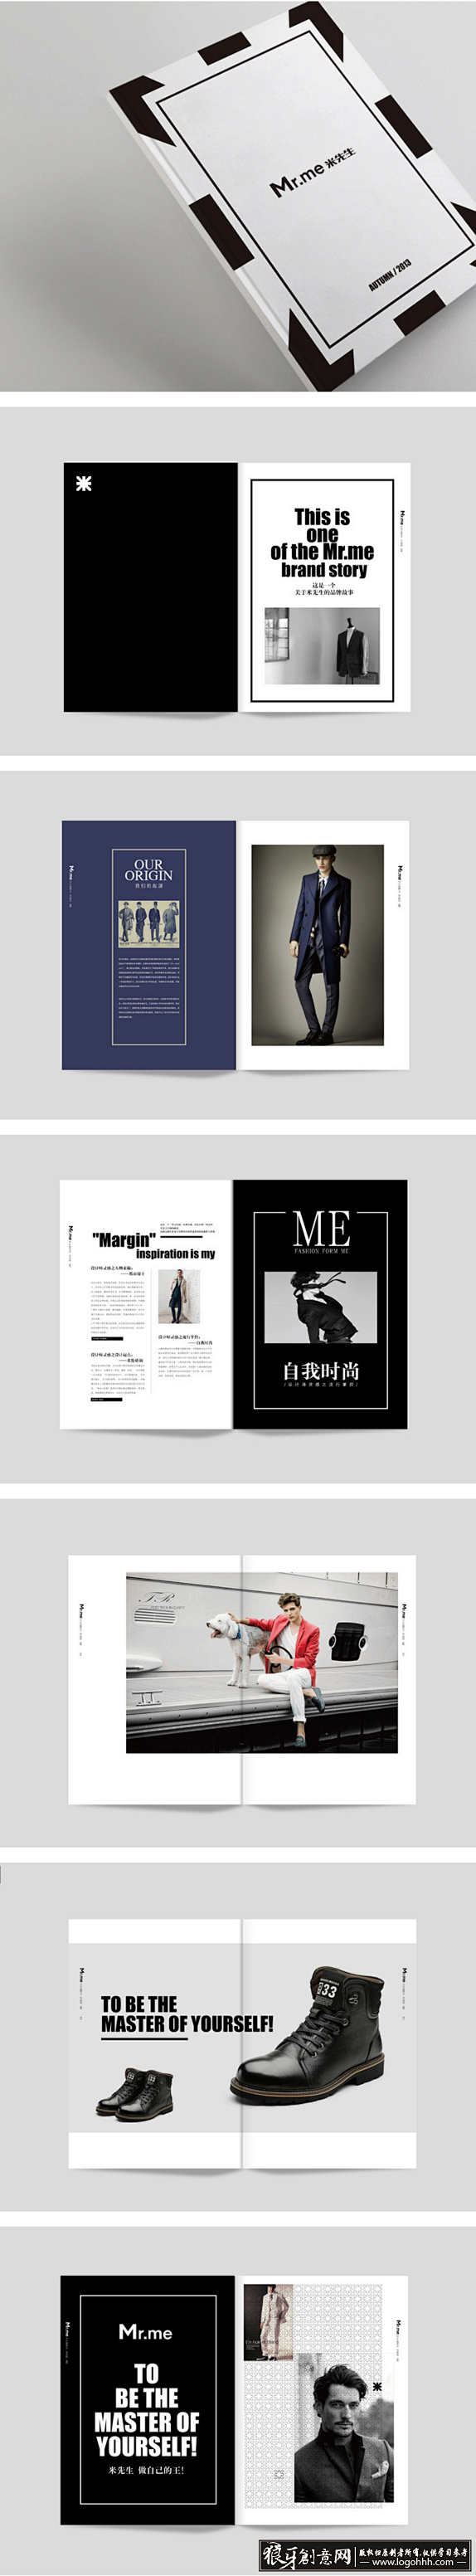 [创意画册] 米先生时尚男装品牌画册设计...